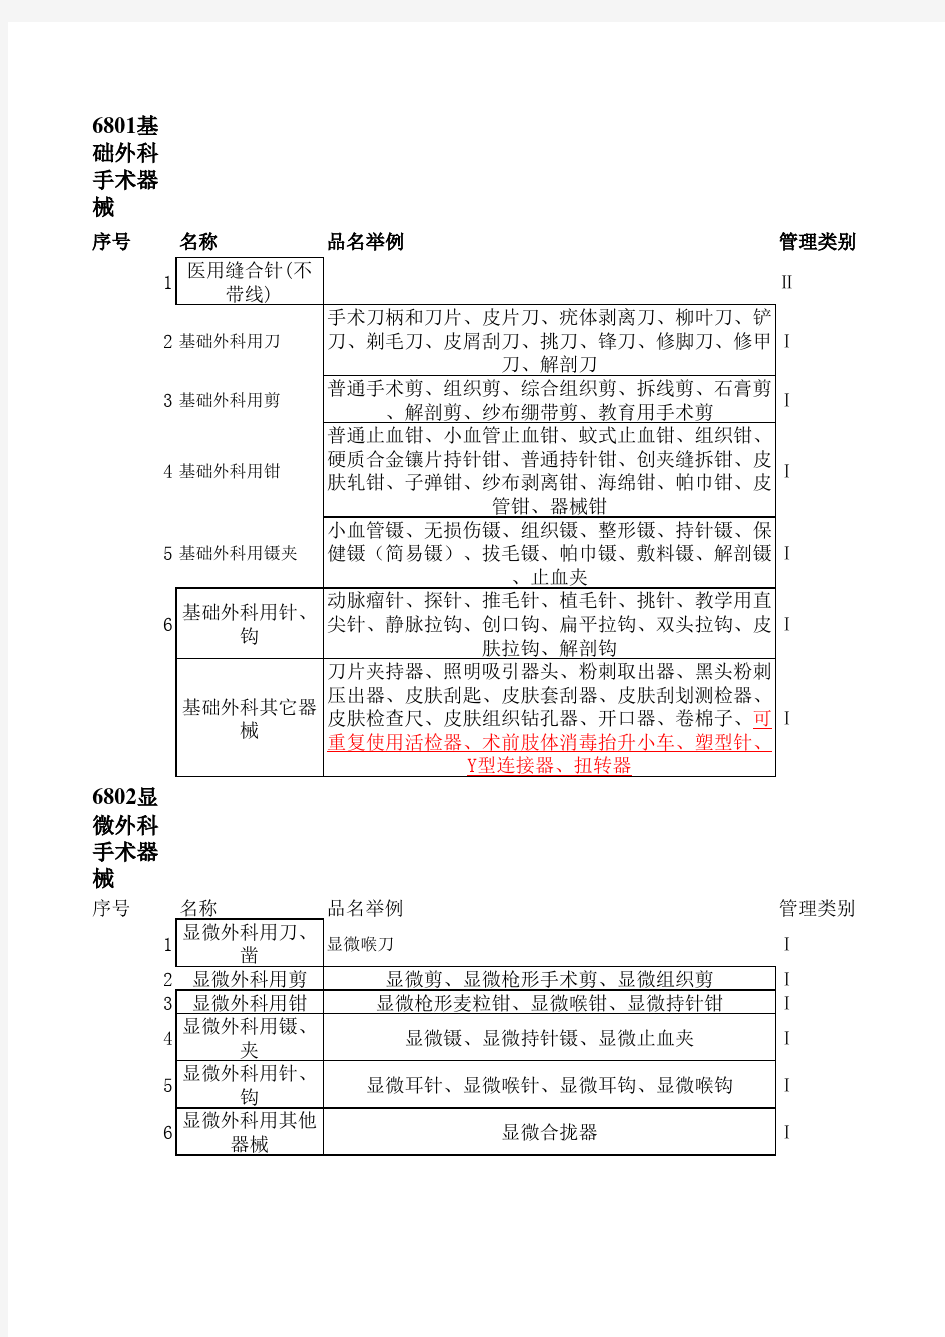 中国医疗器械分类目录(EXCEL)